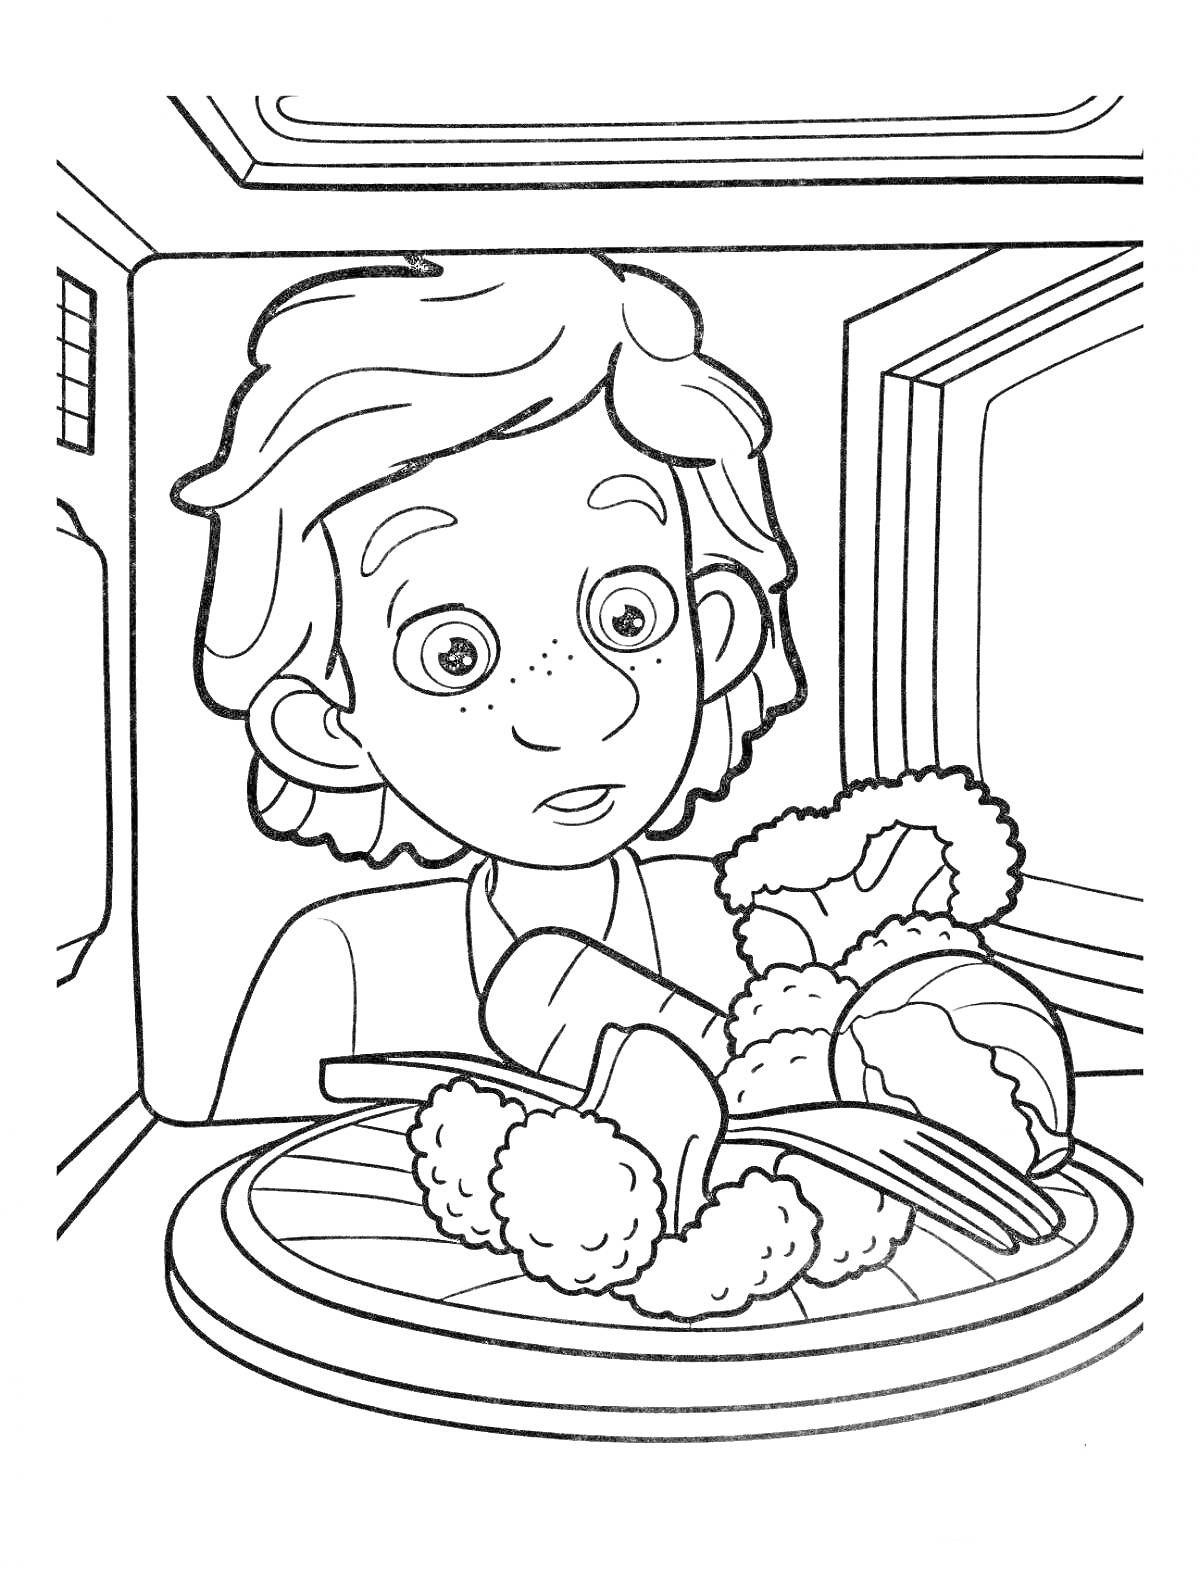 Мальчик перед микроволновой печью, в которой находится тарелка с едой (шашлыки, и другие блюда).